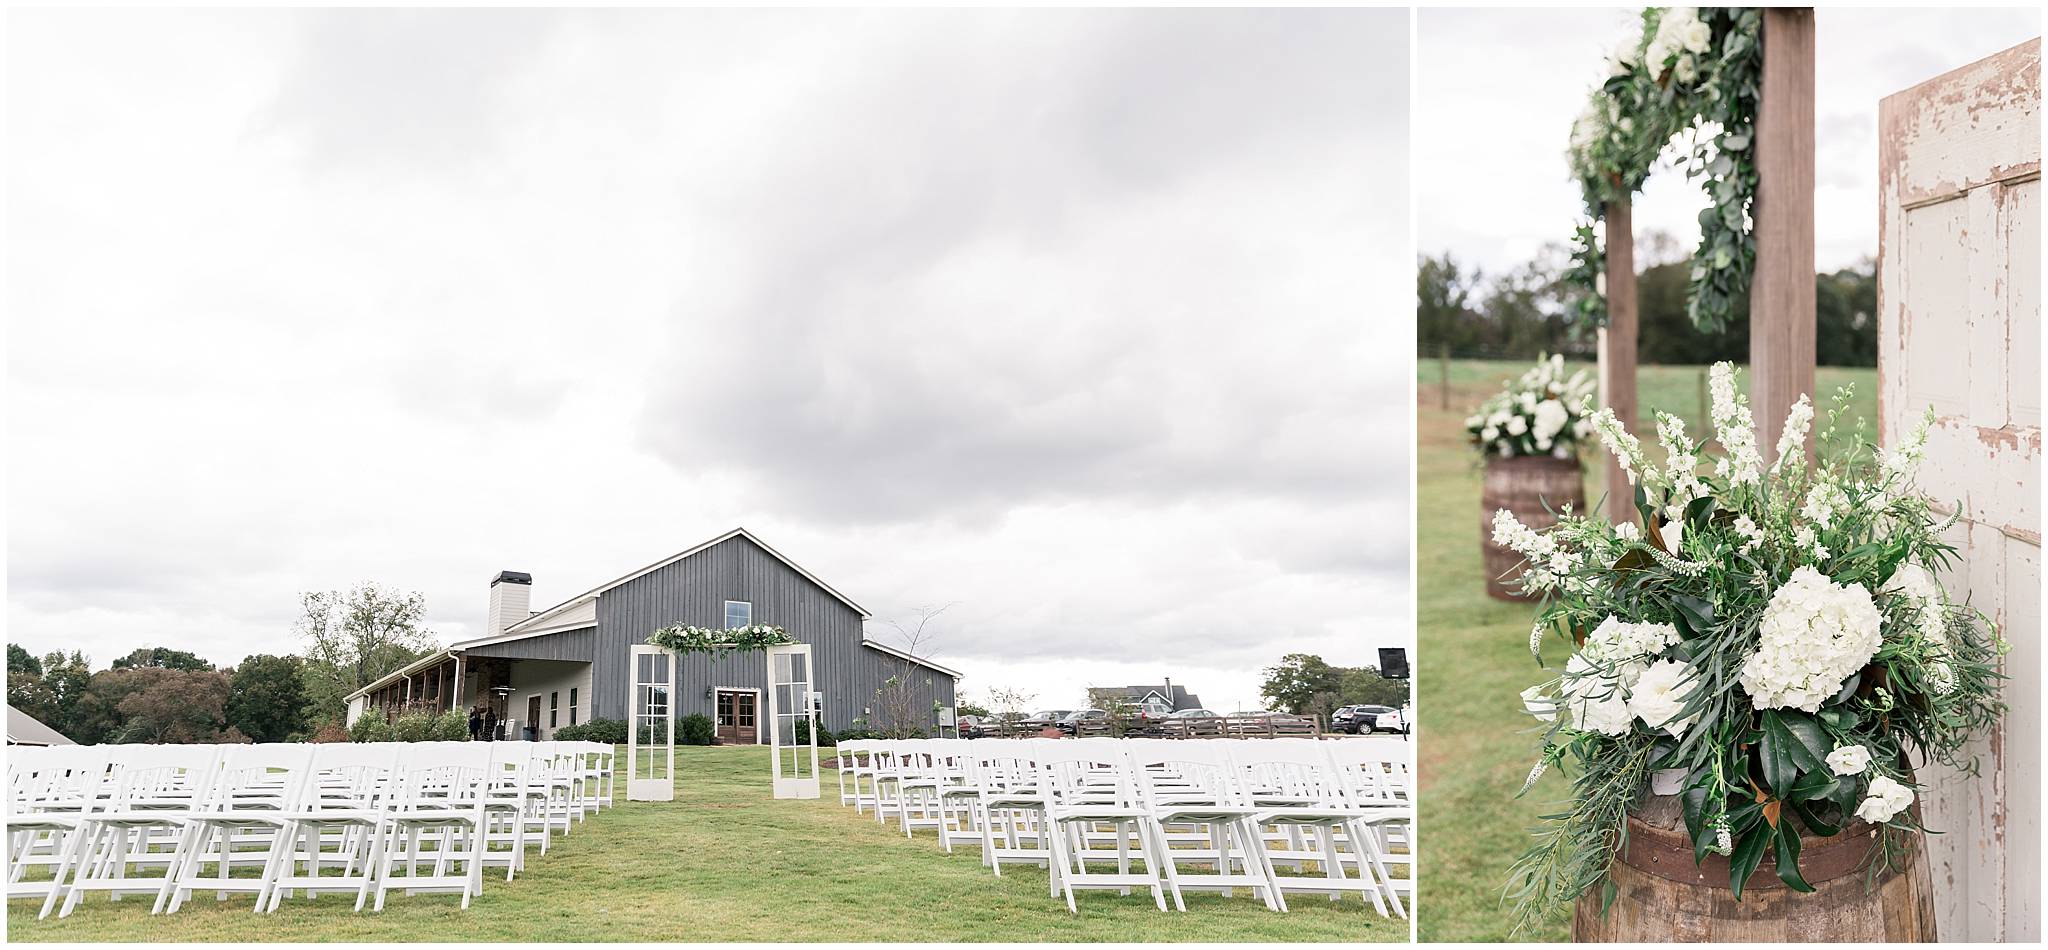 grant hill farms wedding venues in commerce athens jefferson ga georgia